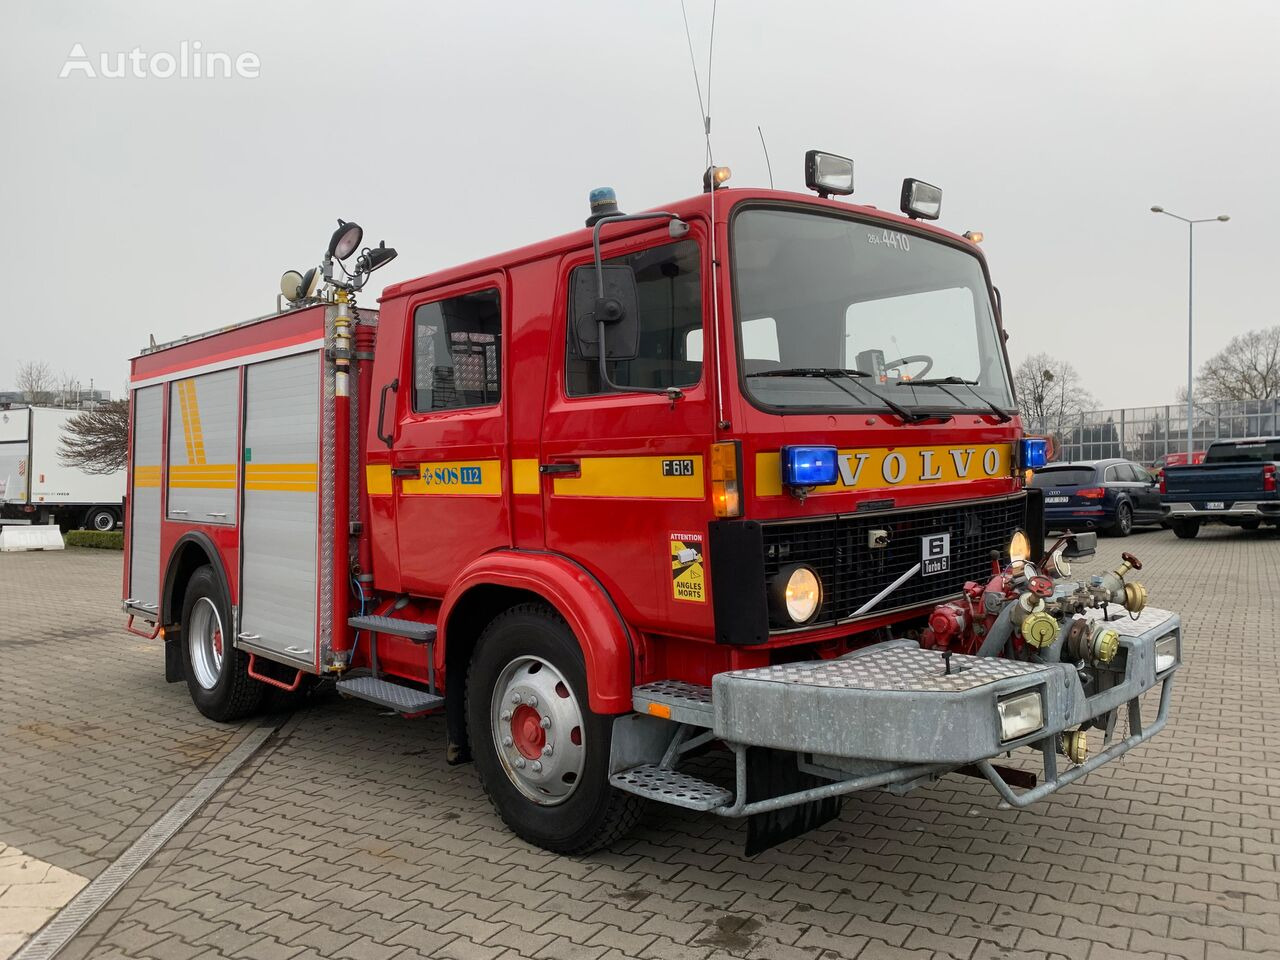 Volvo F613 Turbo / 2000l/min pump / 1000l foam / GOOD CONDITION - Fire truck: picture 1